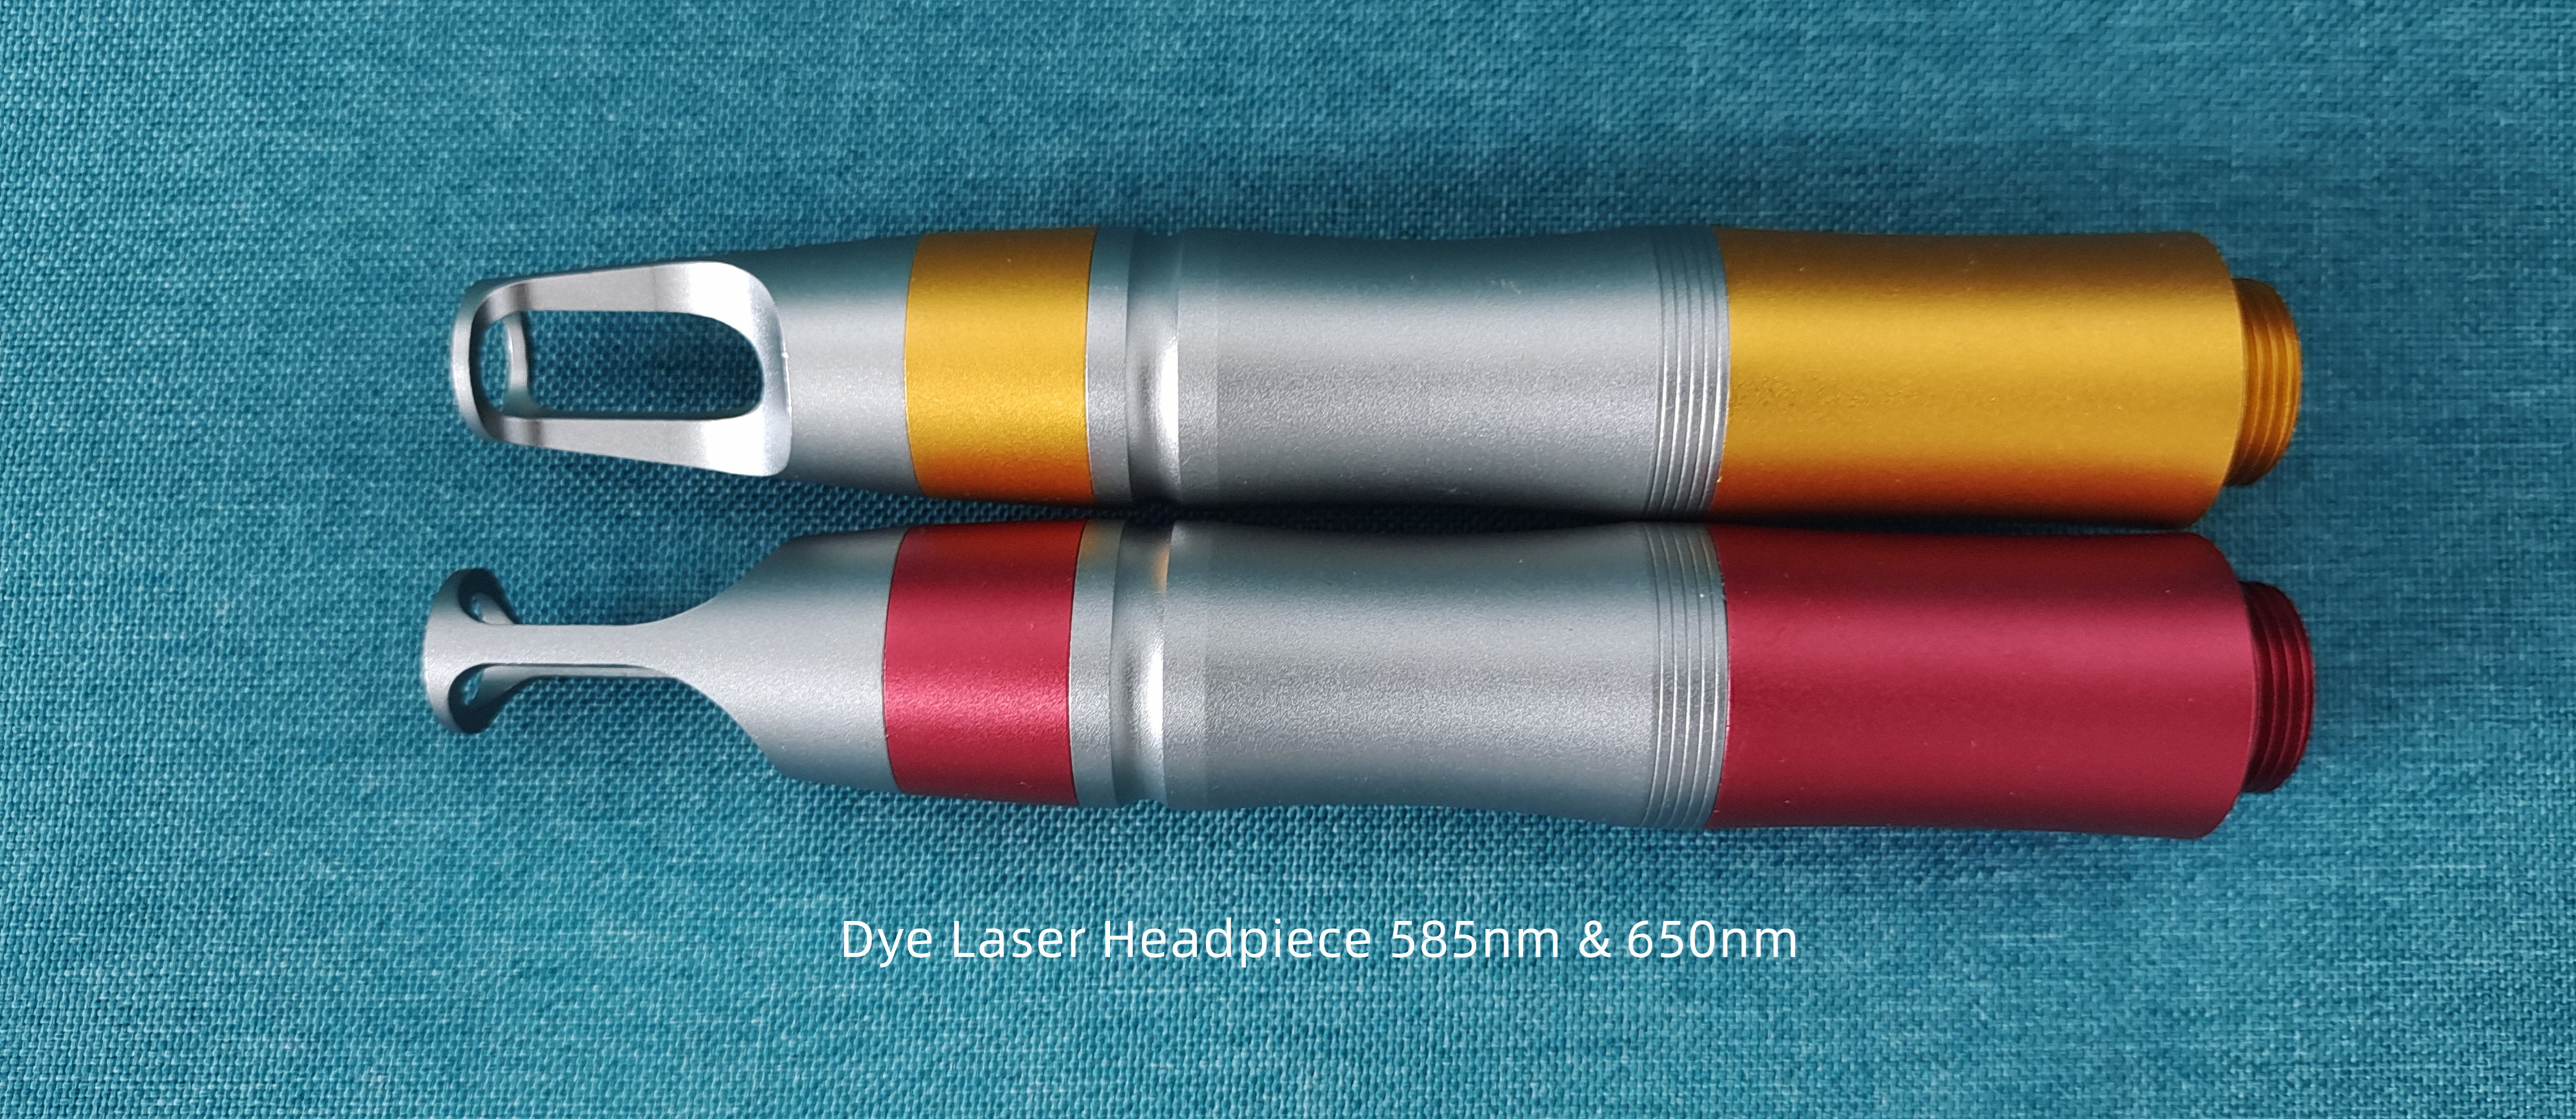 Dye Laser Headpiece-585 & 650-WISOPTIC